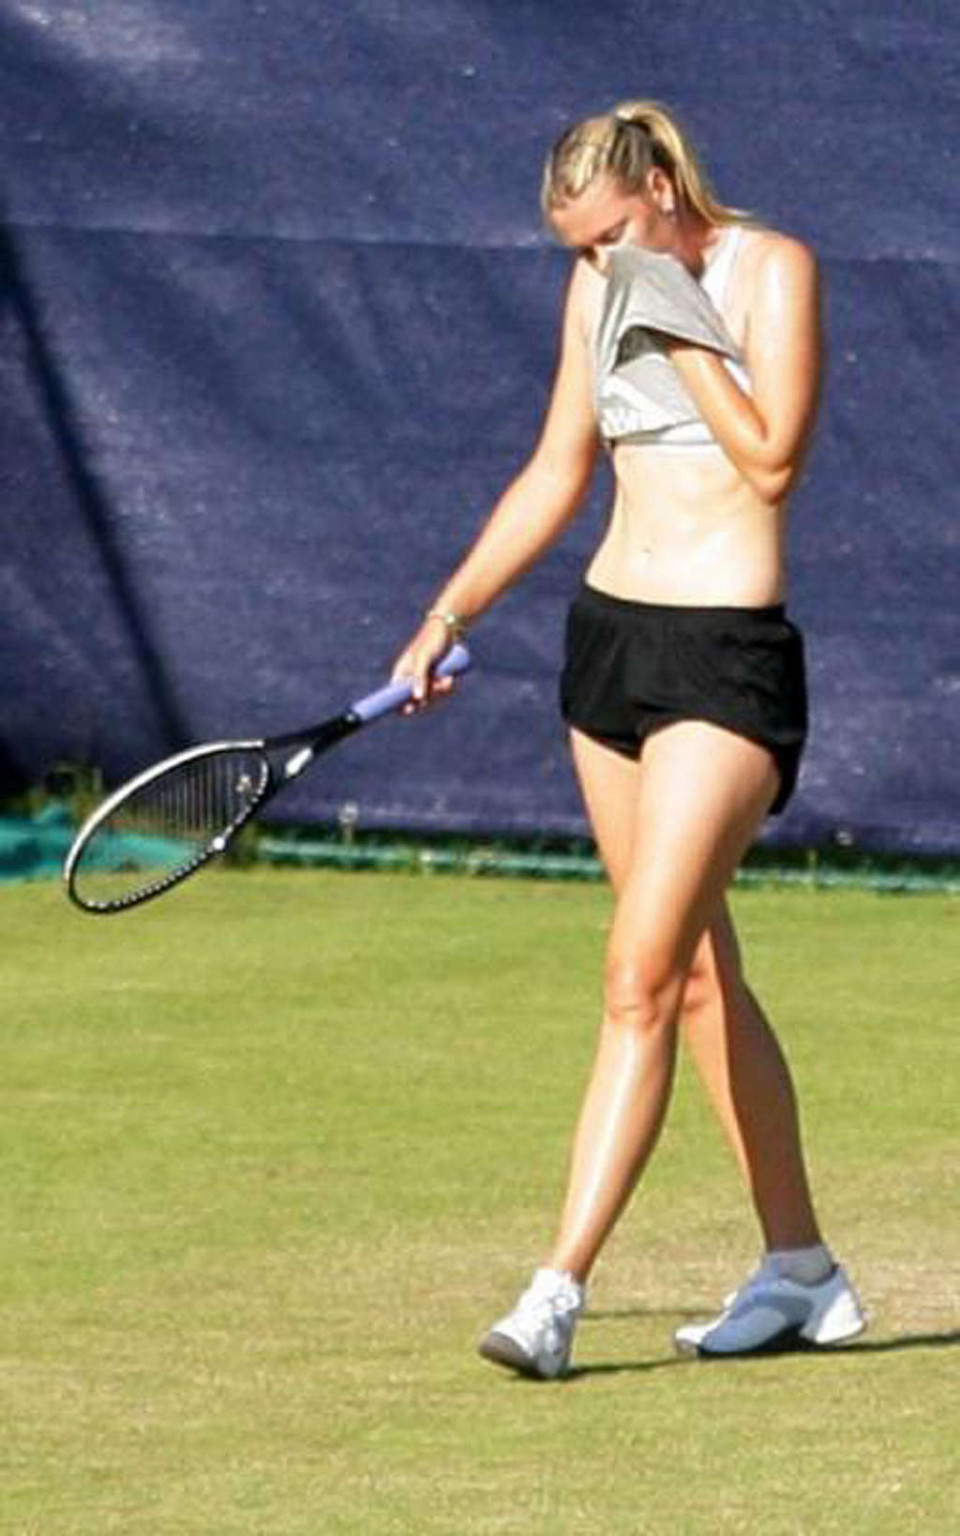 Maria sharapova nipple slip während spielen tennis paparazzi schießt
 #75346428